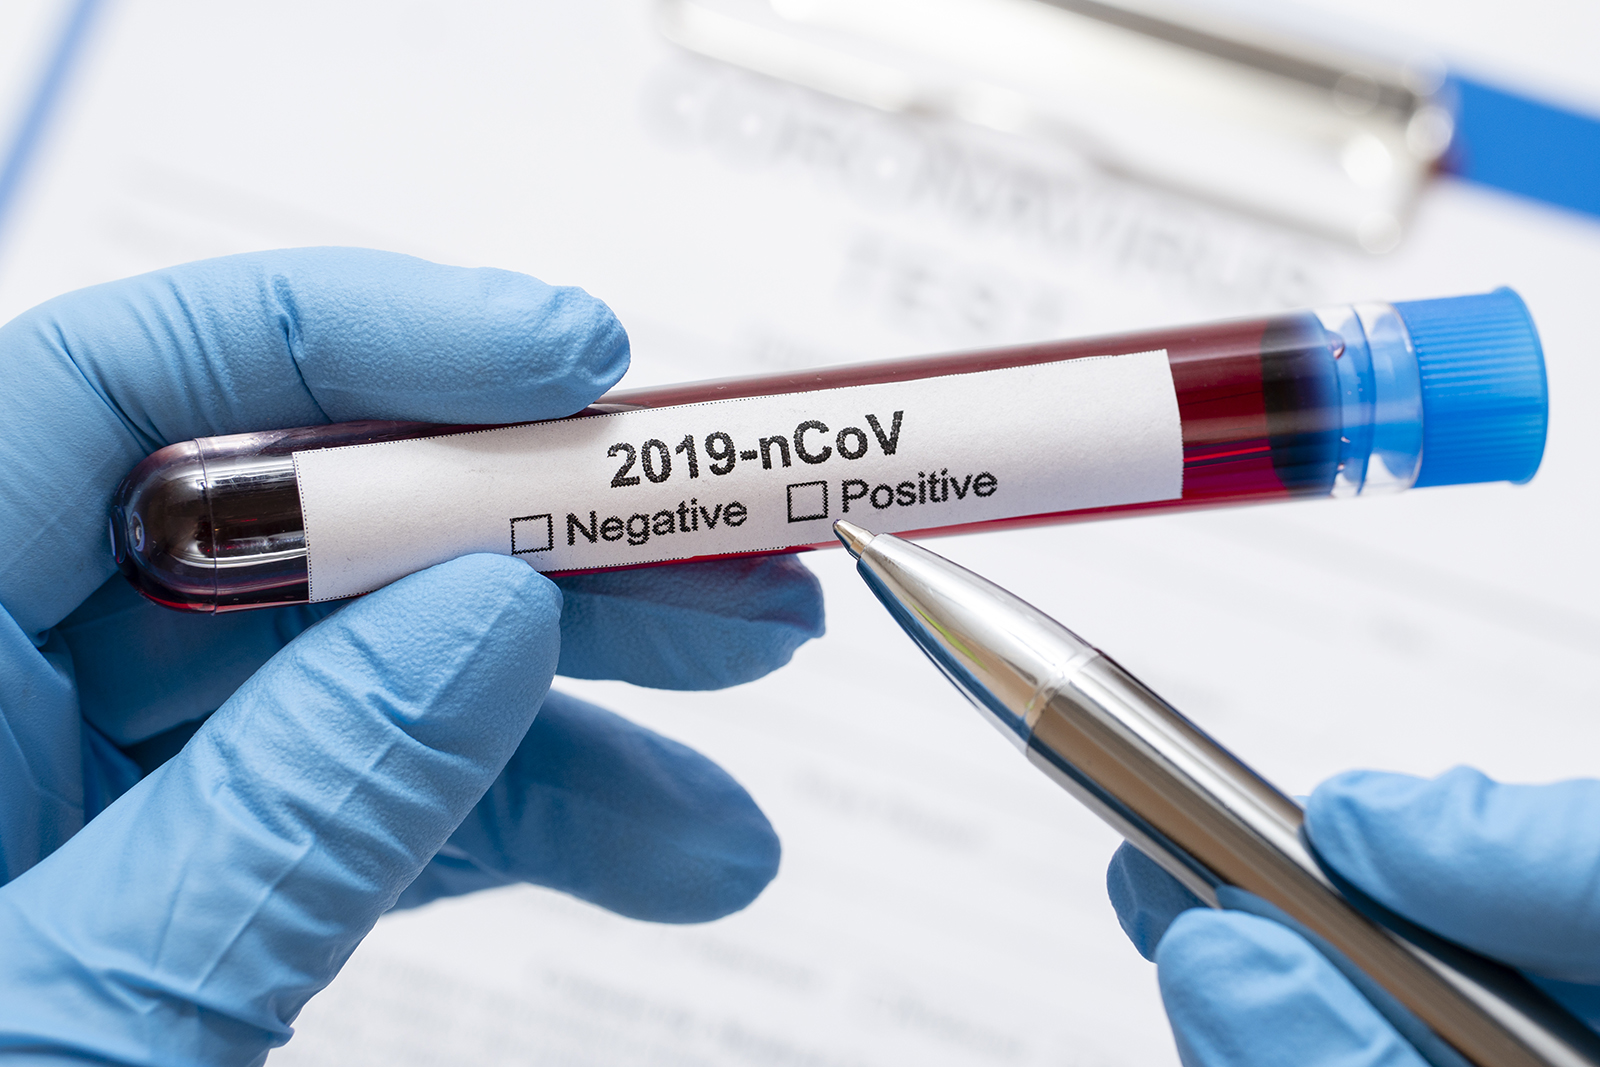 Antradienį nustatyti du nauji koronaviruso atvejai – įvežtiniai, pranešė sveikatos apsaugos ministras Aurelijus Veryga.